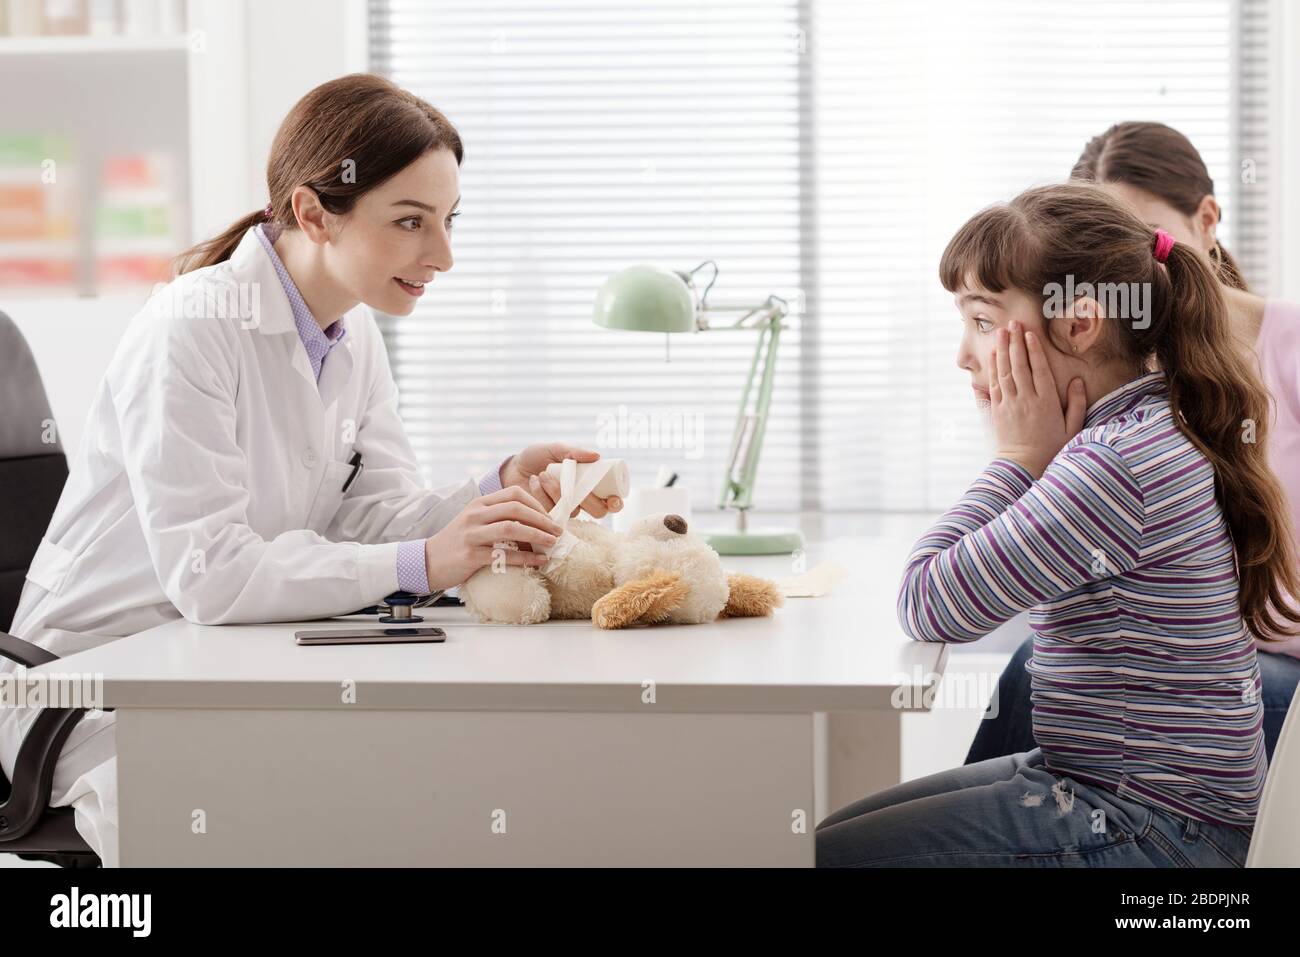 Verspielter Arzt, der den Teddybären eines Mädchens mit einem Verband umhüllt, ist das Mädchen schockiert, das Konzept von Gesundheit und Kindern Stockfoto